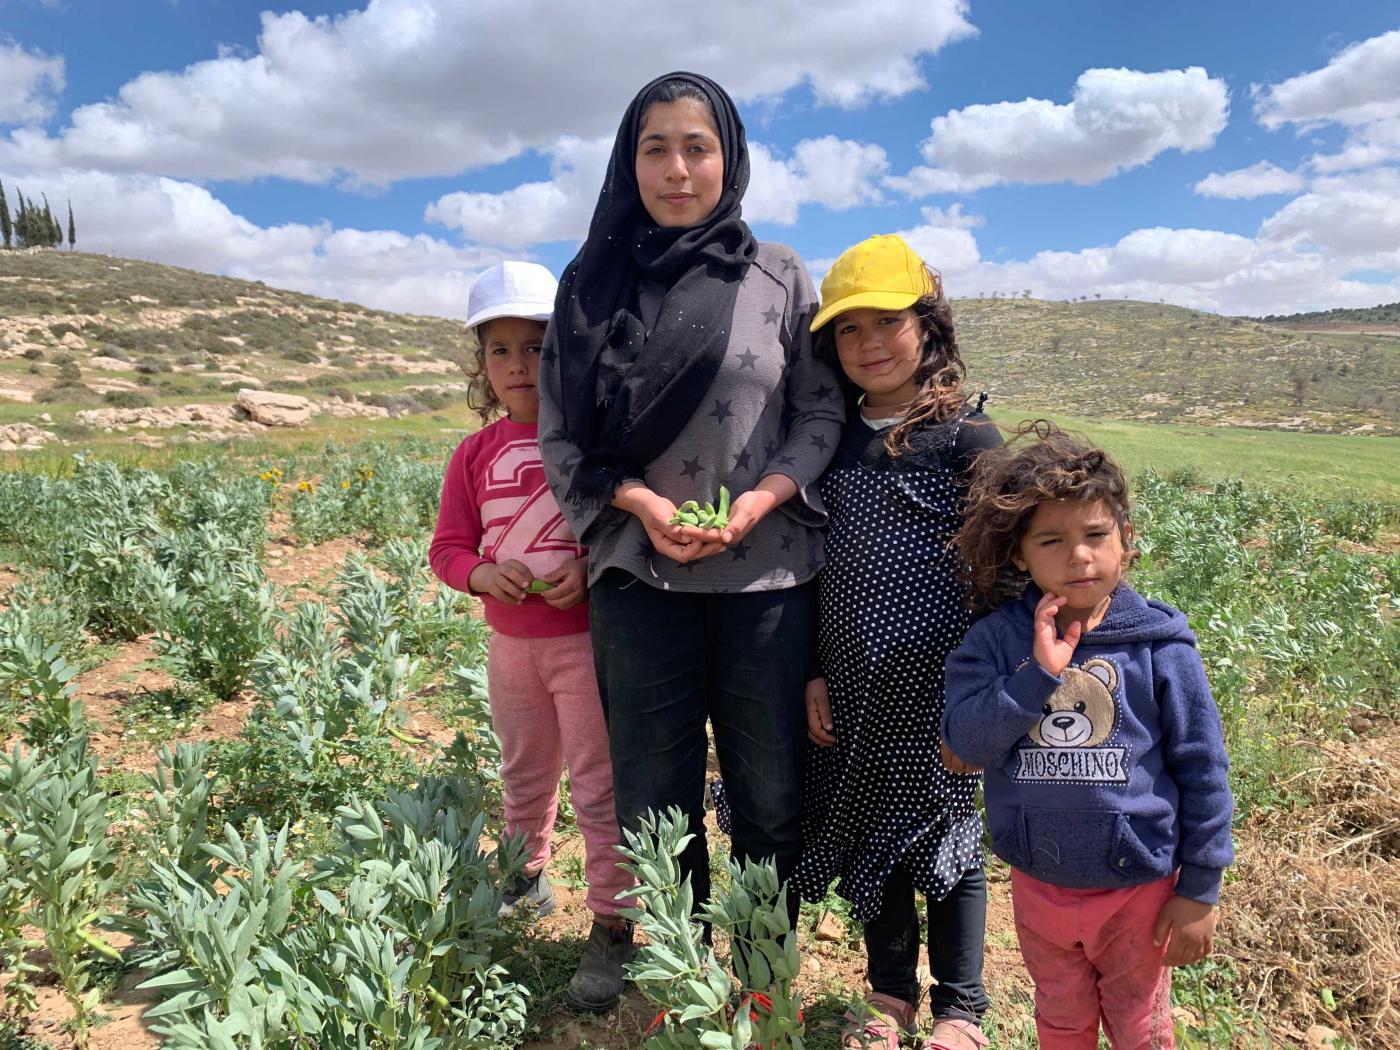 زينة أبو كباش وشقيقاتها الأصغر يتغيبن عن الدروس الإلكترونية لانقطاع الإنترنت عن القرية